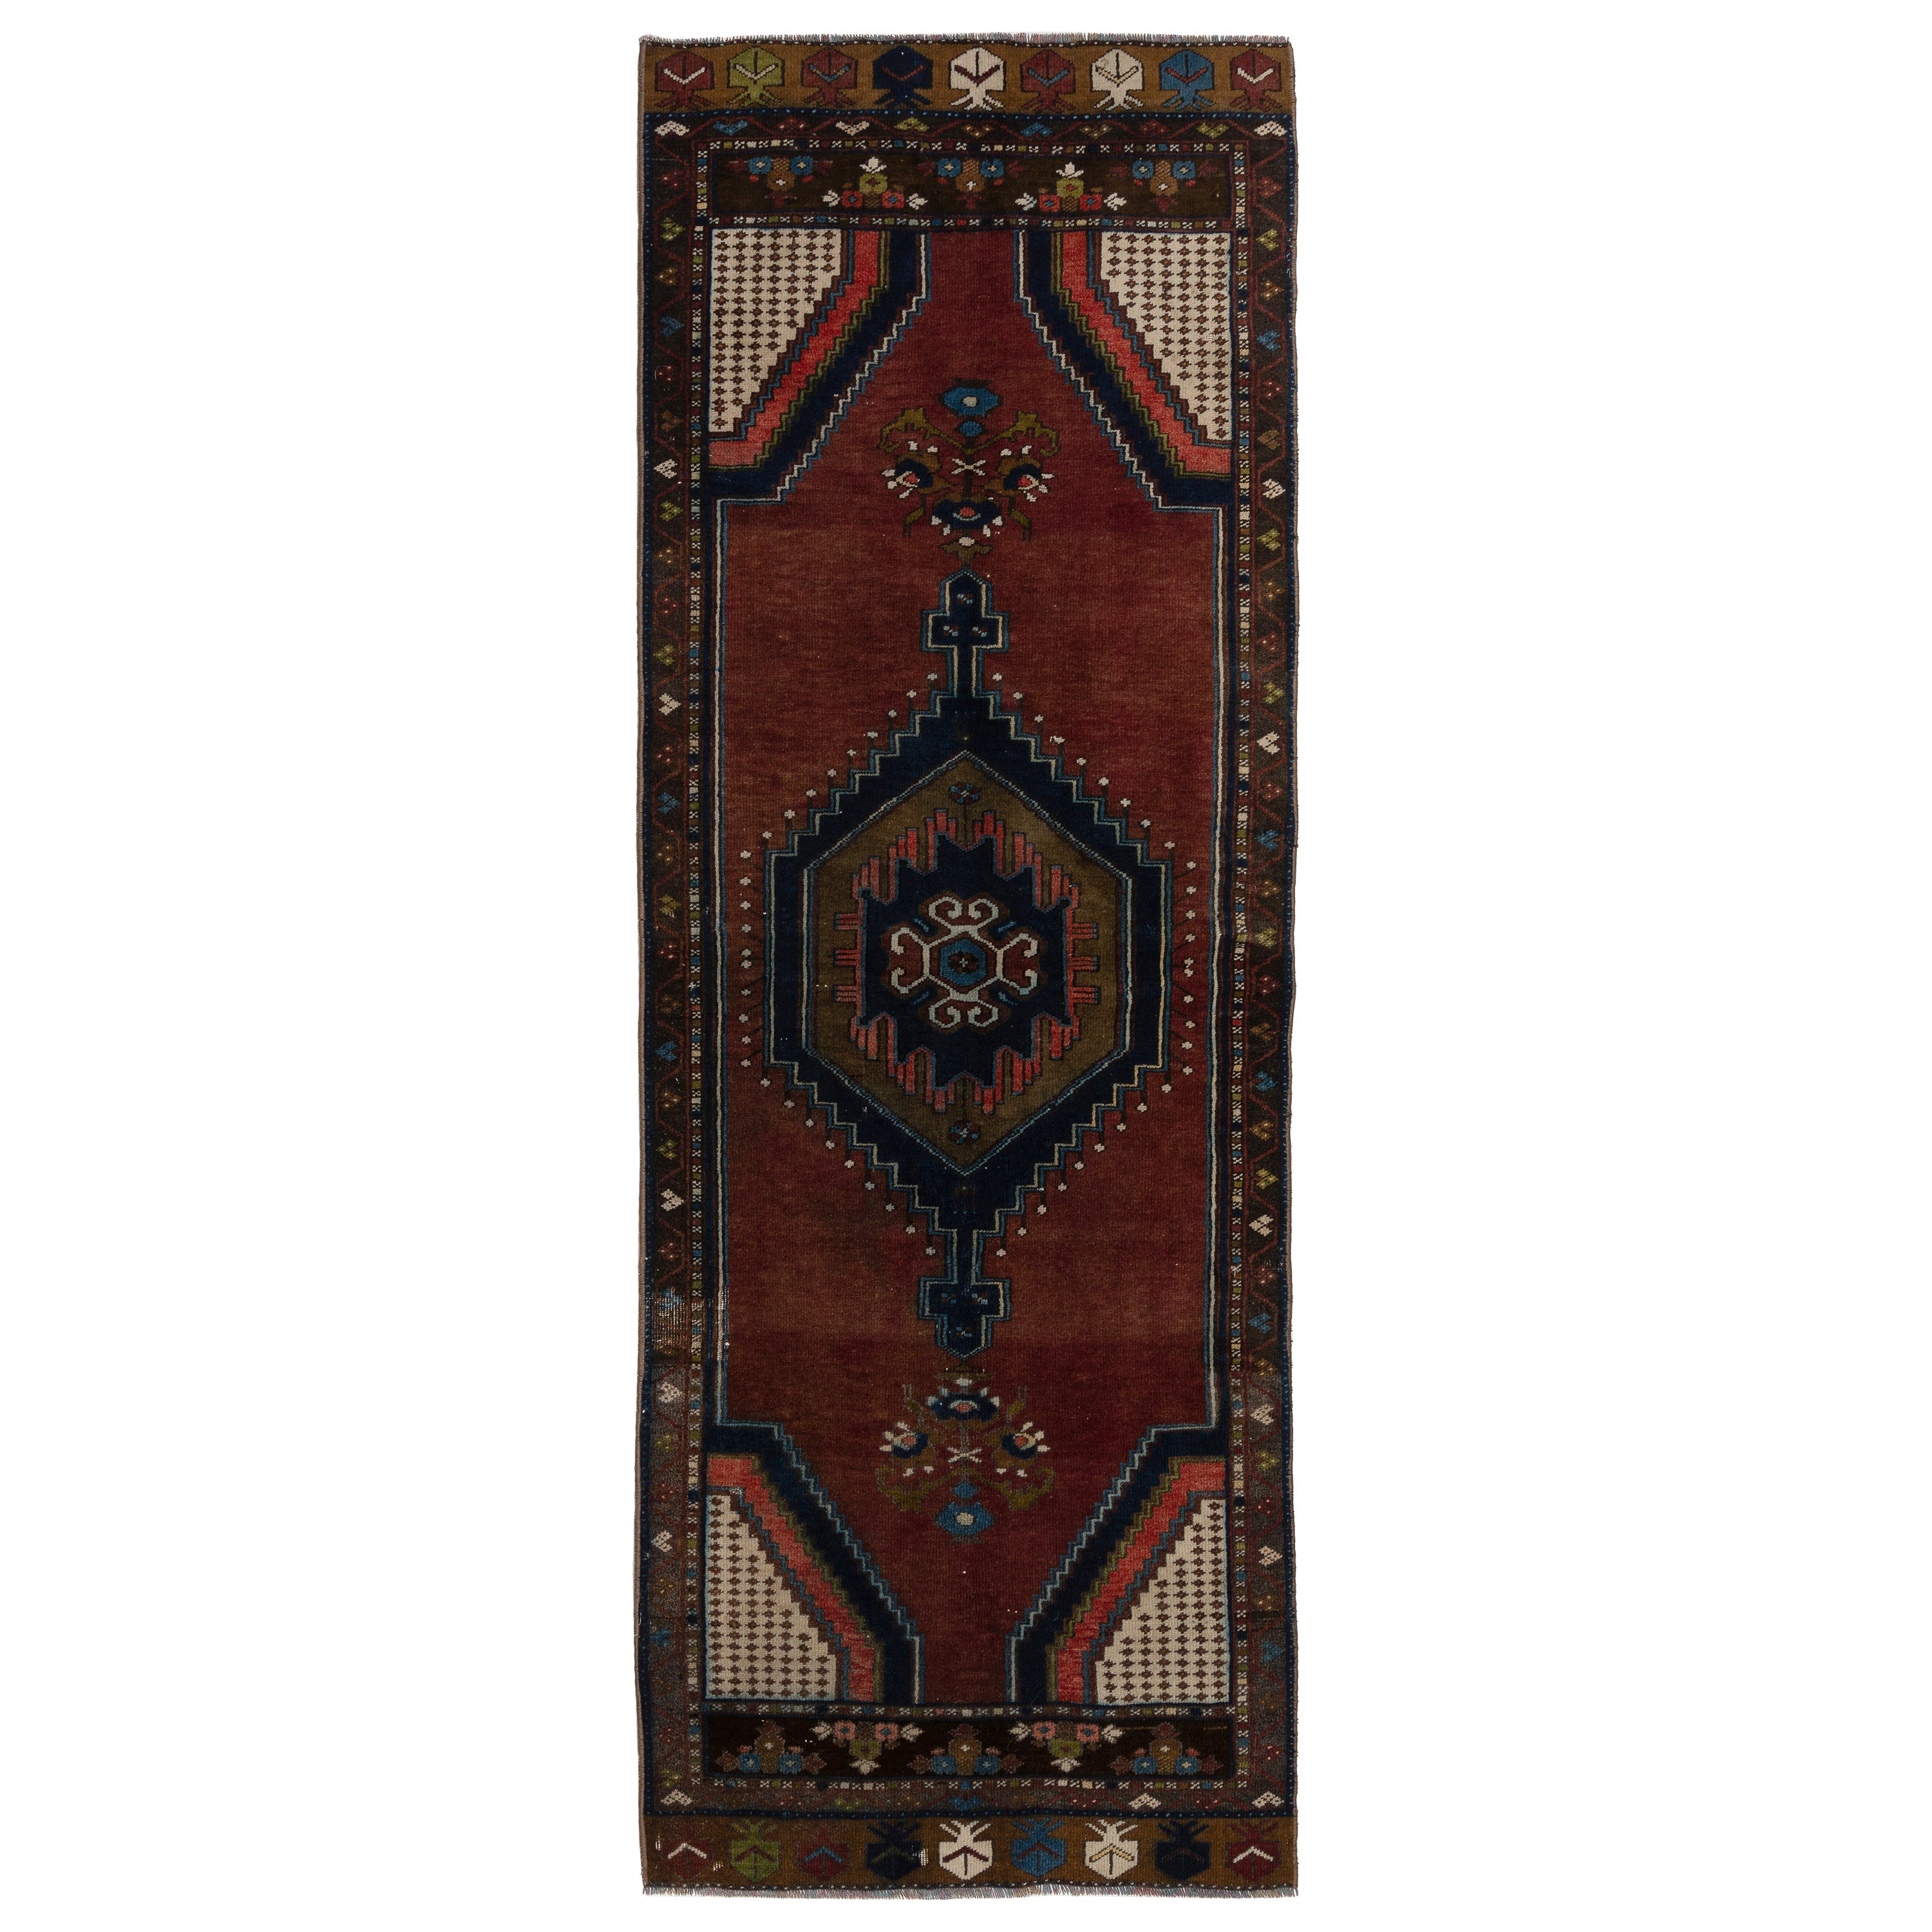 2.8x7.8 Ft One-of-a-Kind Vintage Handmade Türkisch Stammes-Läufer Teppich %100 Wolle